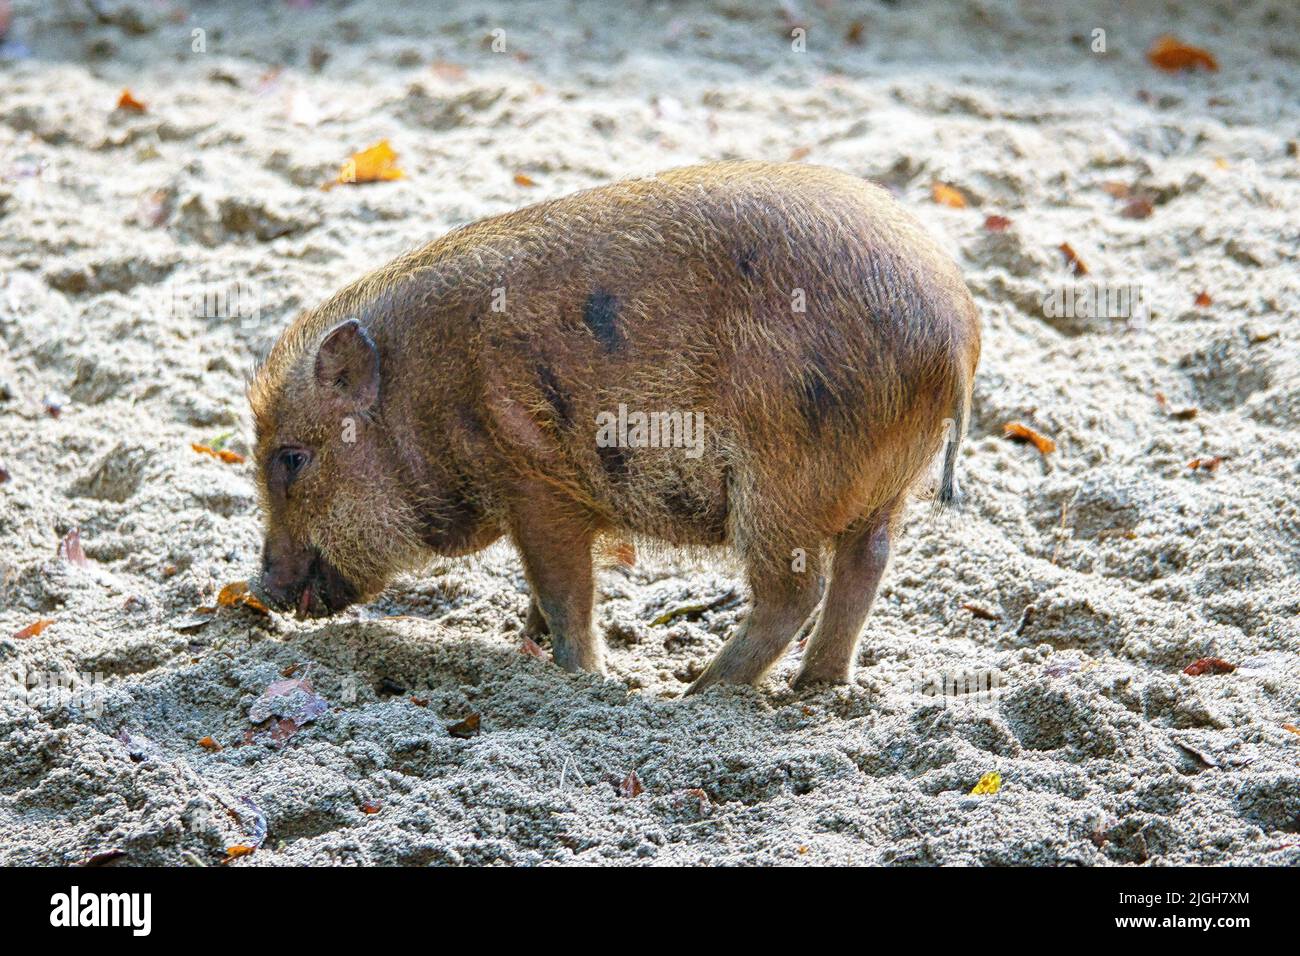 Taubenbauchferkel, im Sand graben. Hausschwein für die Fleischproduktion. Nutztier, Säugetier. Tierfoto Stockfoto